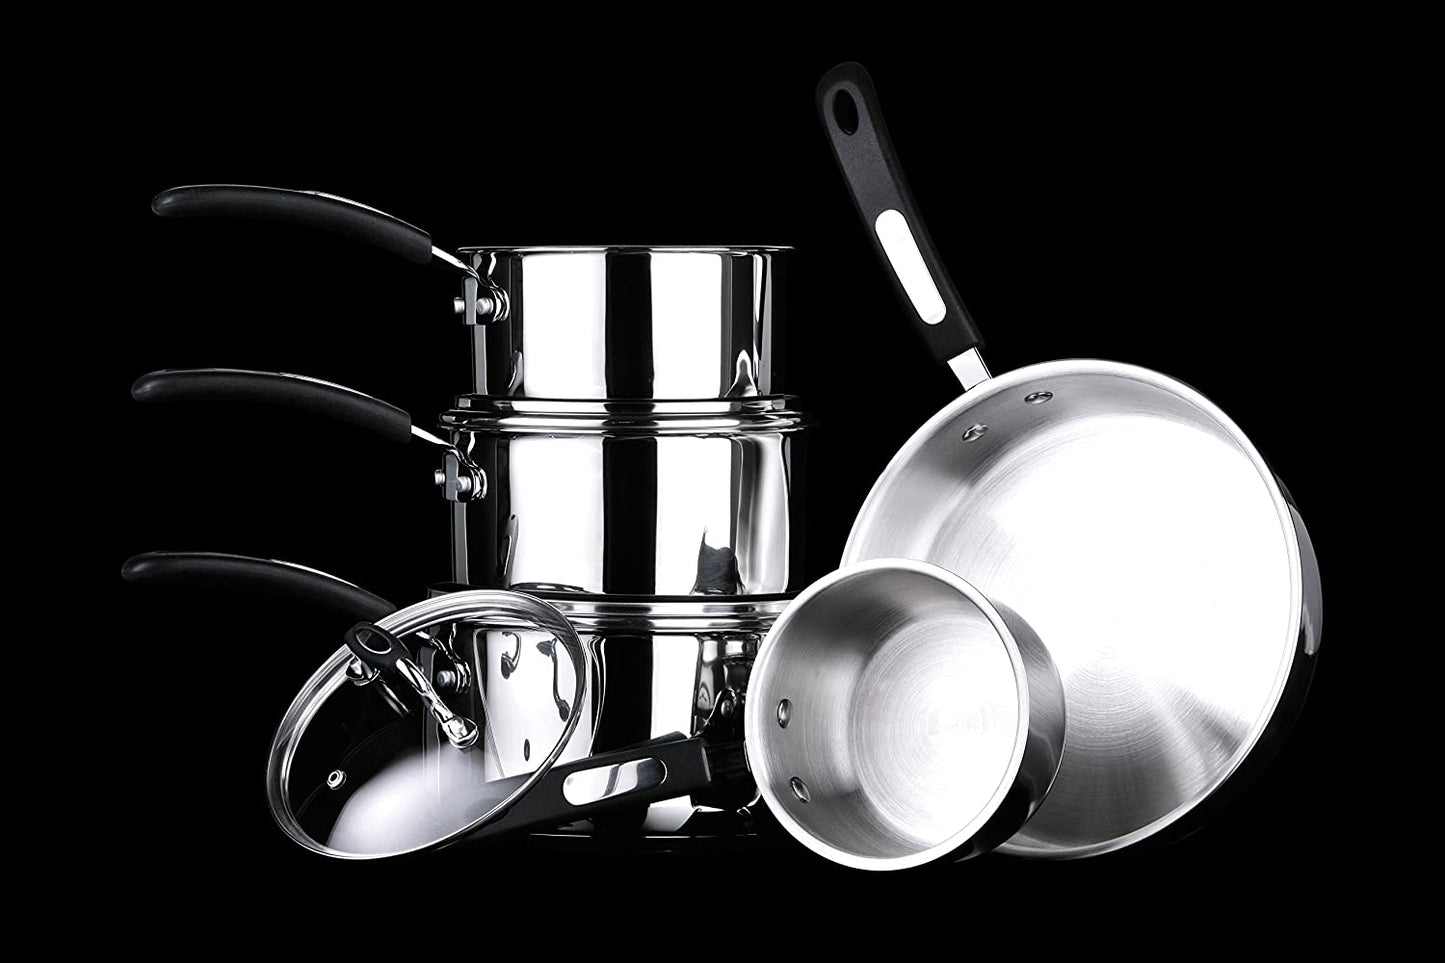 Tenzo S Ii Series 5Pc Cookware Set